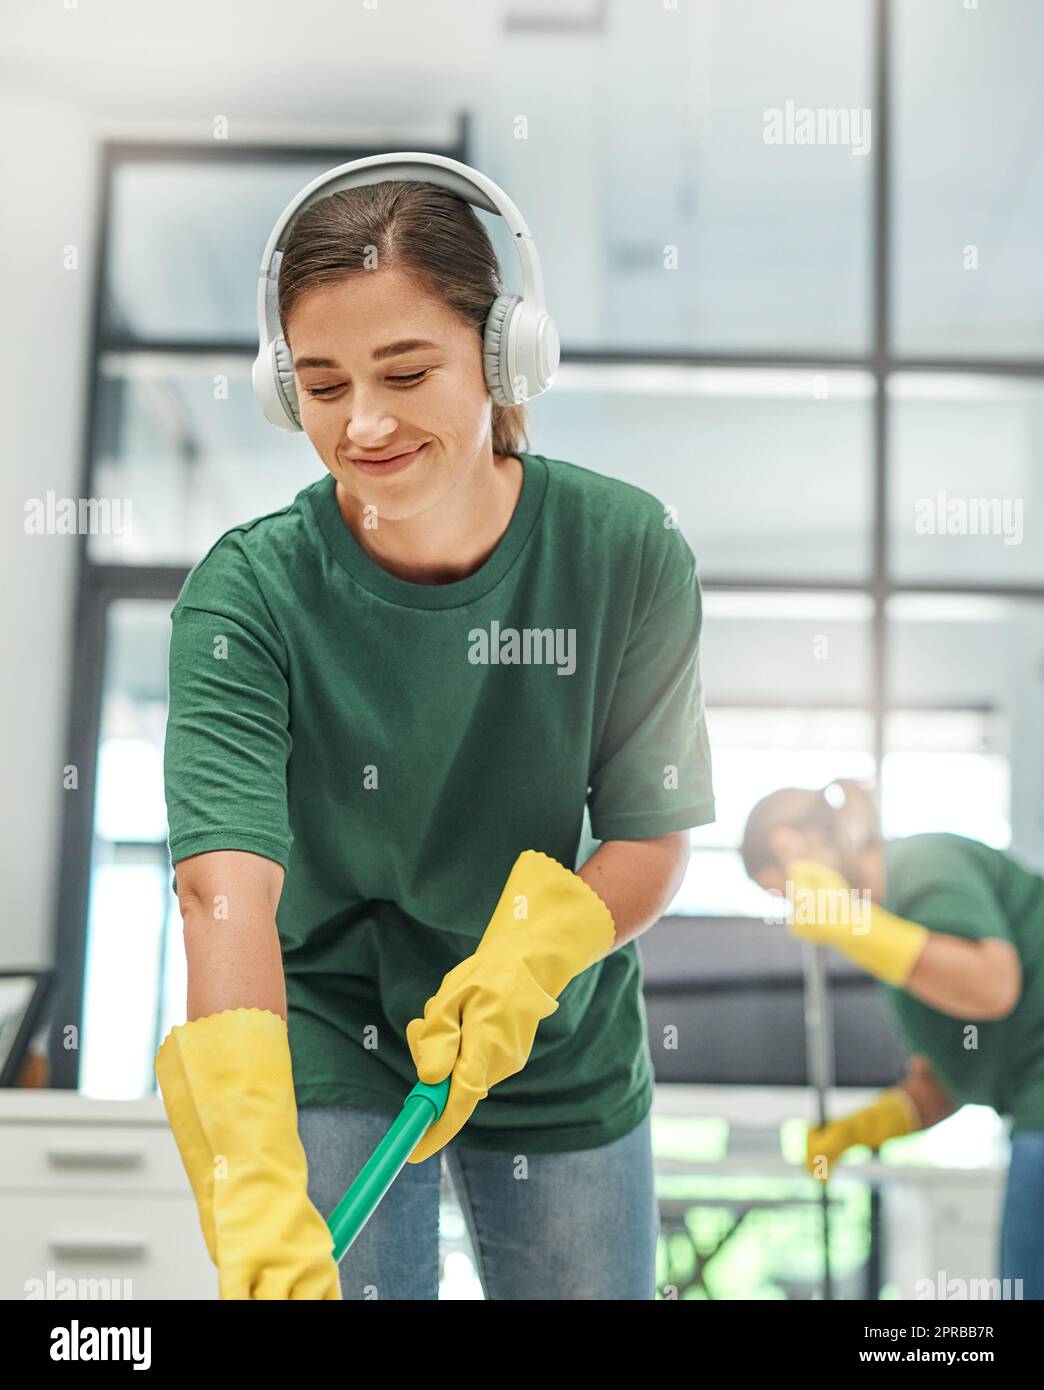 Fournir un environnement de travail propre à chaque client. Une jeune femme nettoyant un bureau avec son collègue en arrière-plan. Banque D'Images